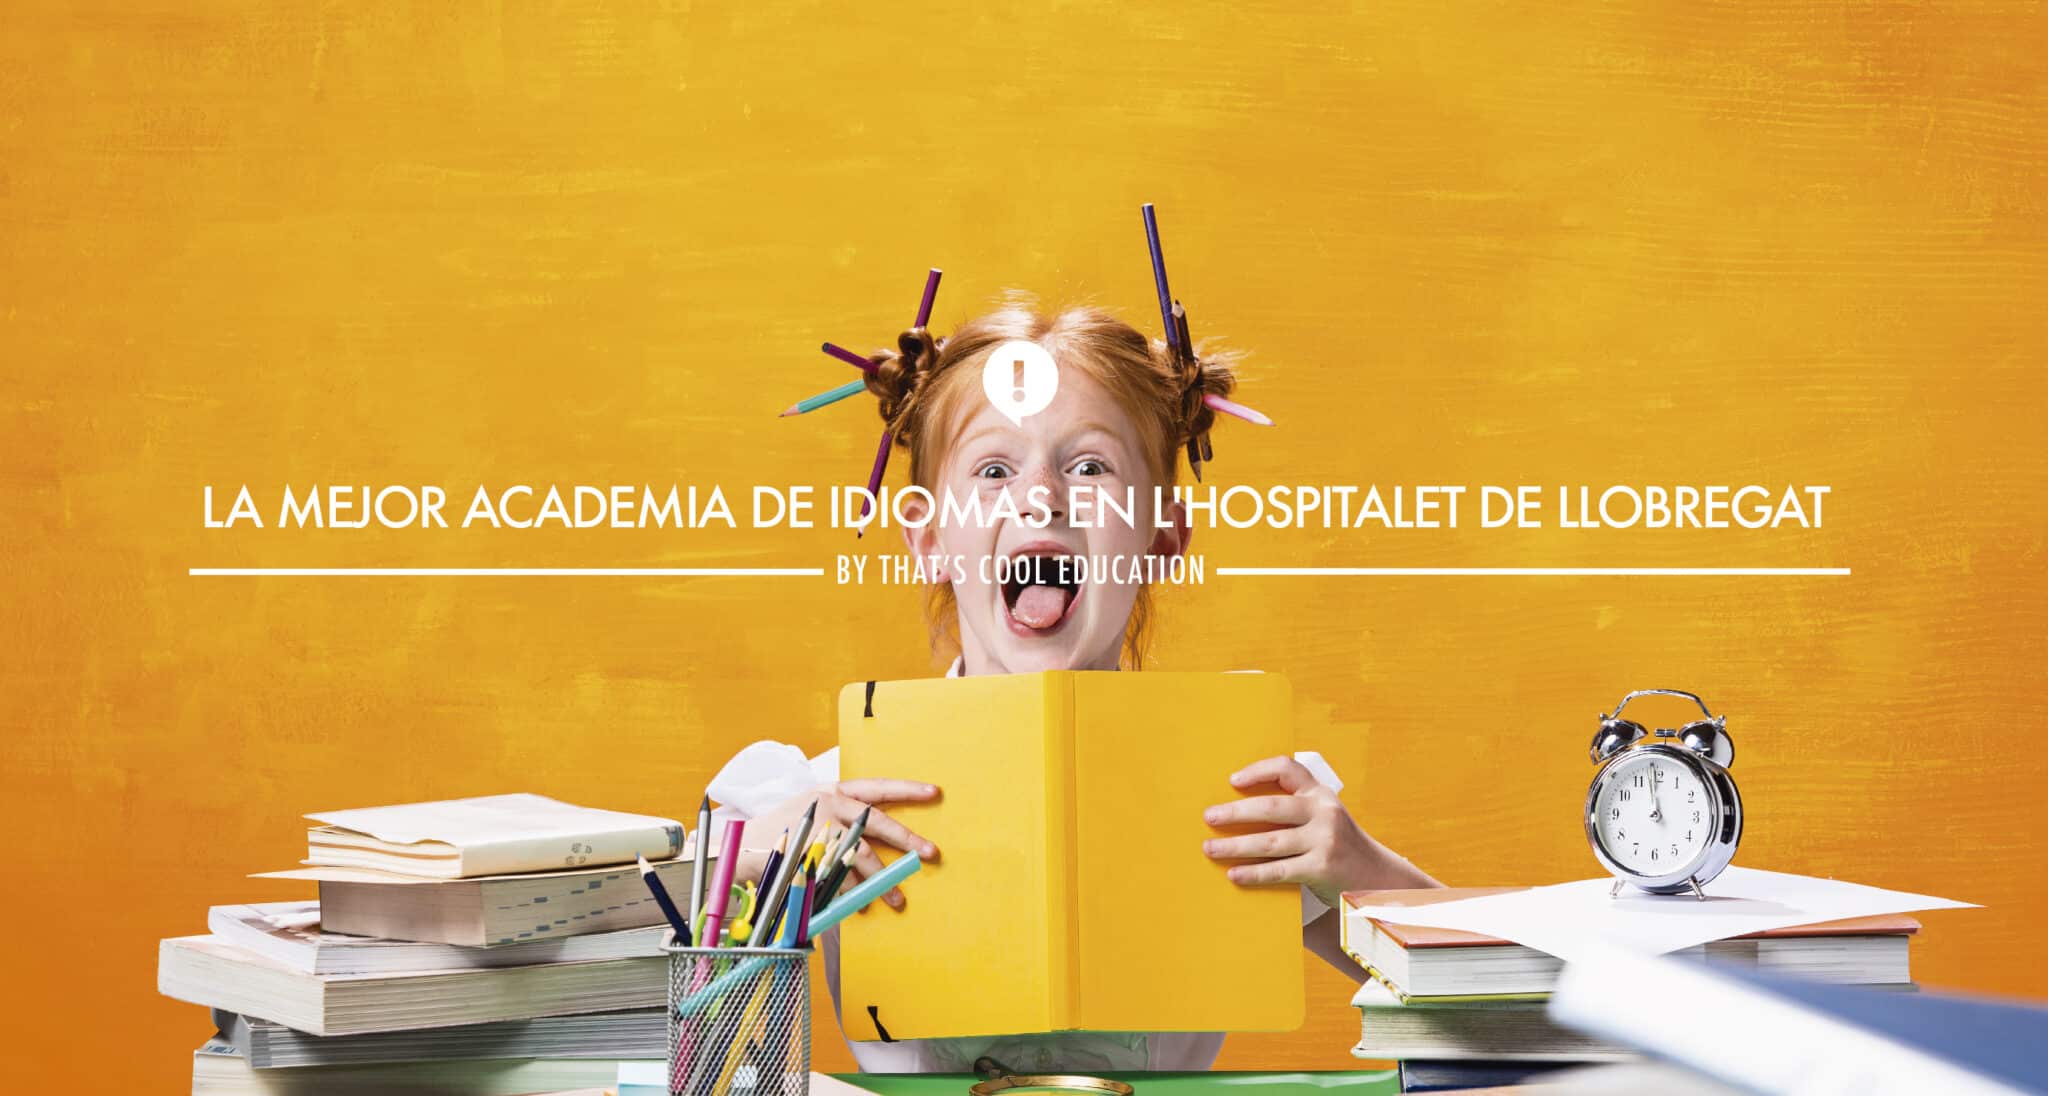 Si estás buscando la mejor academia de idiomas en L'Hospitalet de Llobregat, no busques más, That's Cool Education es la respuesta.